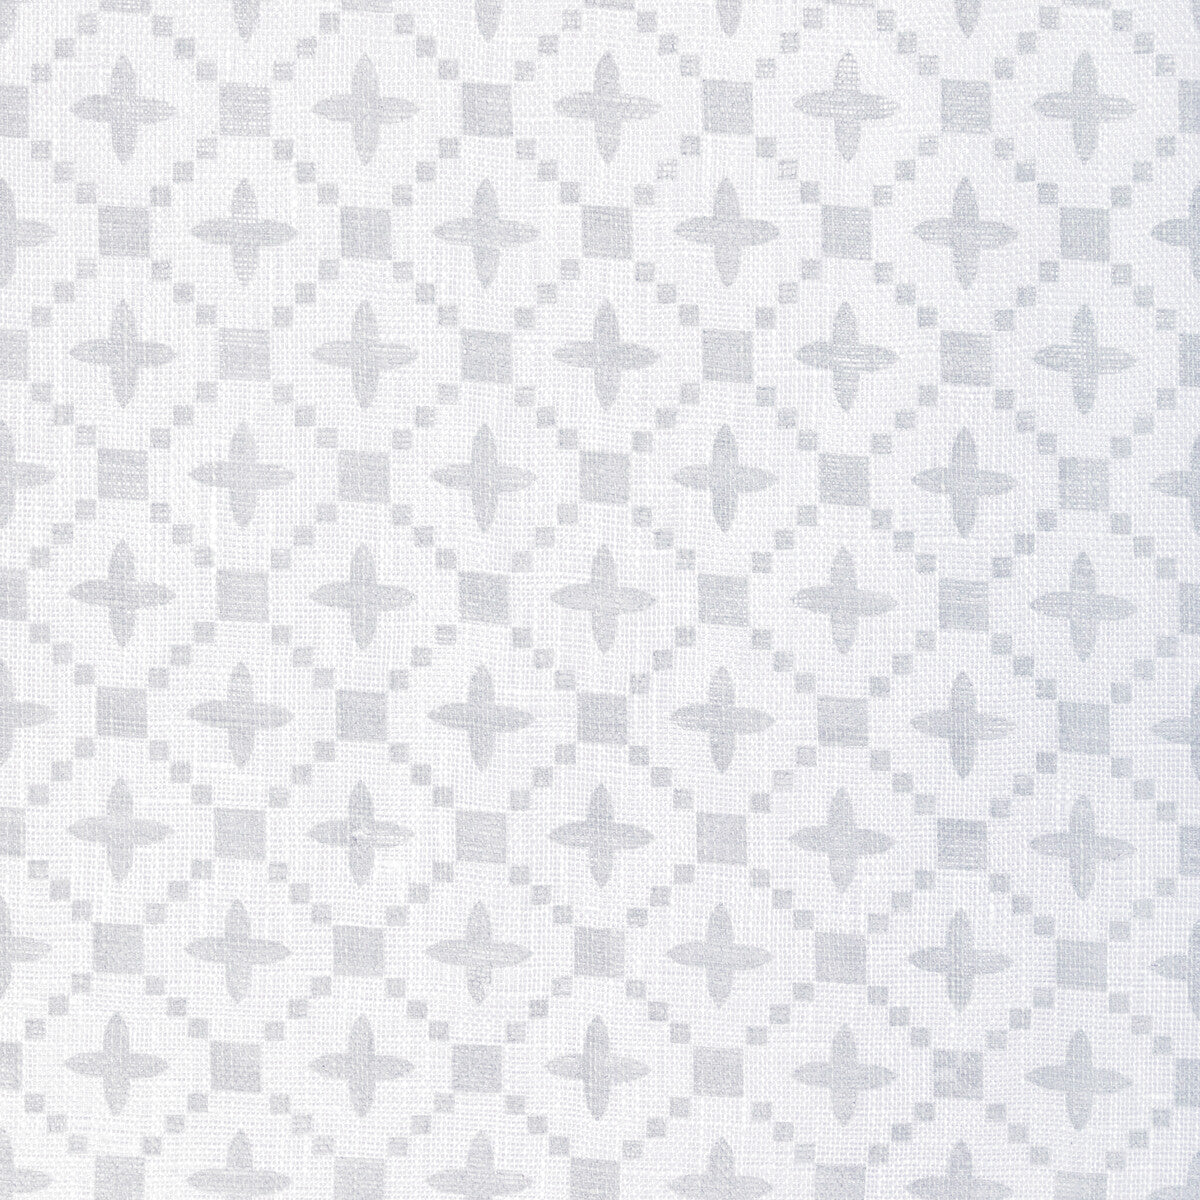 Kravet Basics fabric in 4945-11 color - pattern 4945.11.0 - by Kravet Basics